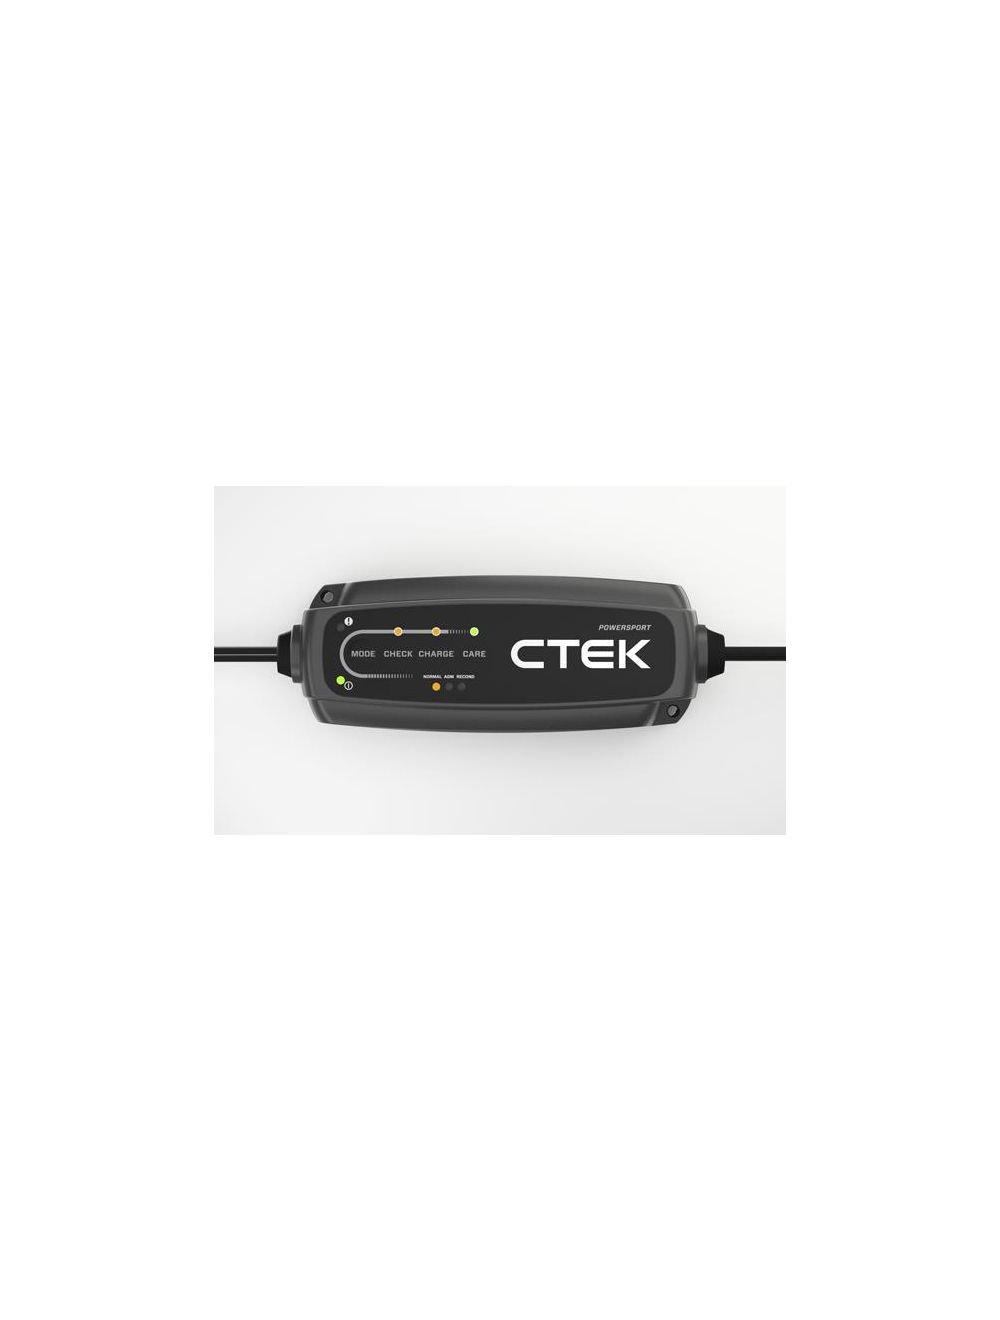 POWERSPORT caricabatterie Ctek 12V 2,3A per batterie a 12V da 5 a 25 Ah -  TuttoBatterie